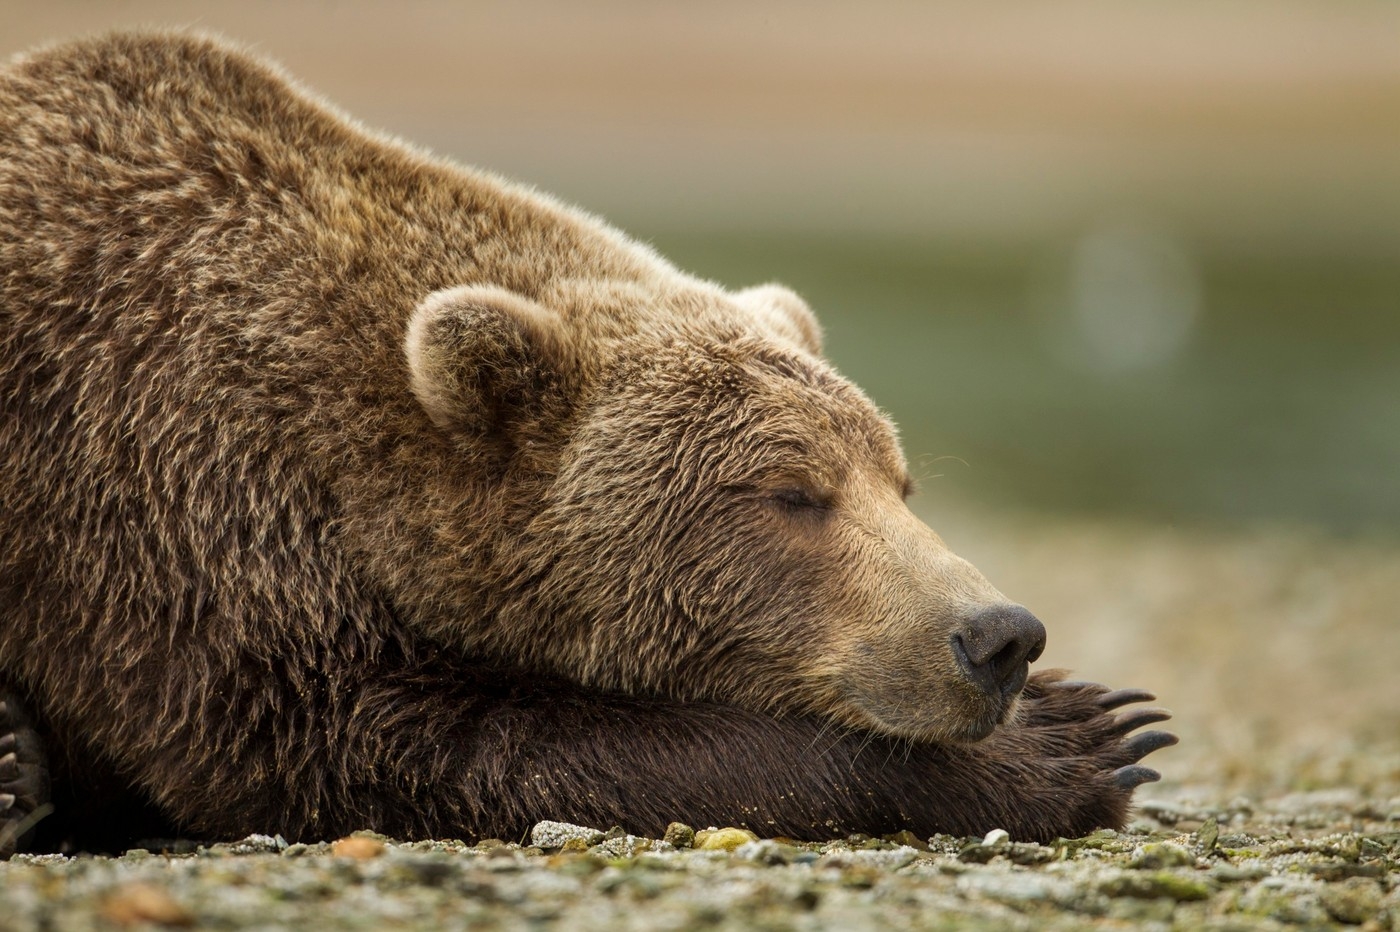 Slovenský parlament schválil zákon o jednodušším odstřelu problémových medvědů